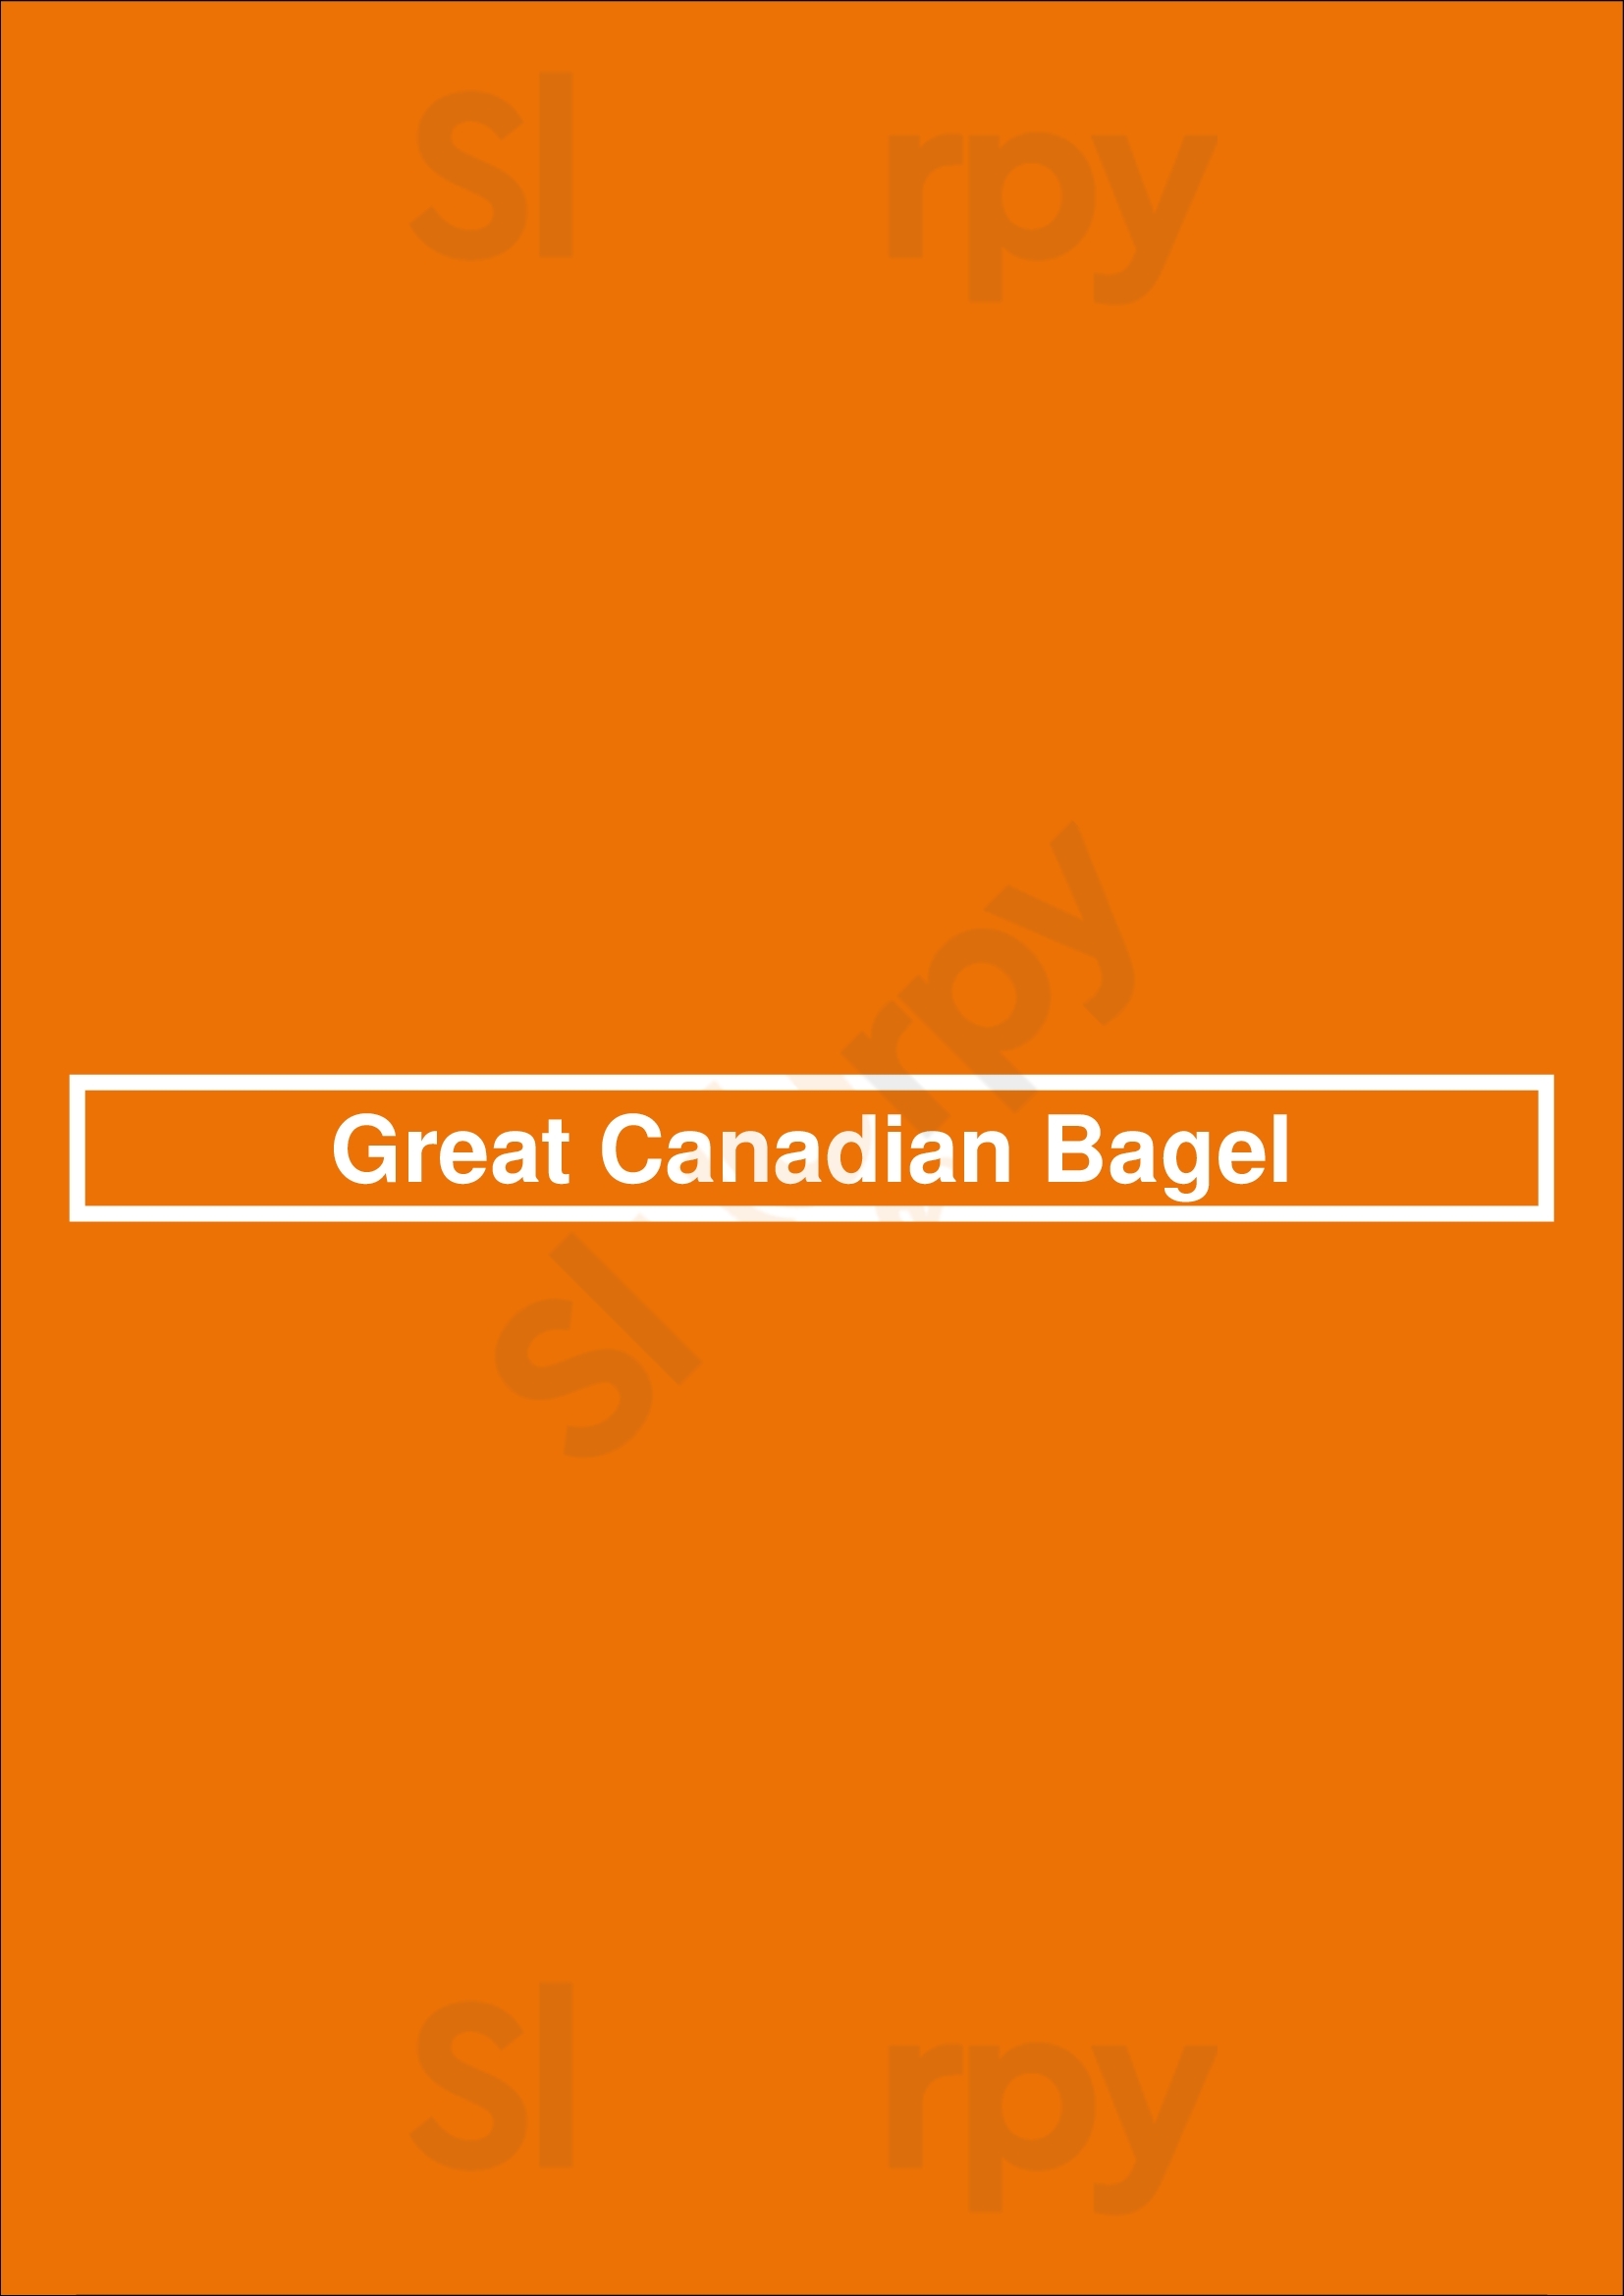 Great Canadian Bagel London Menu - 1